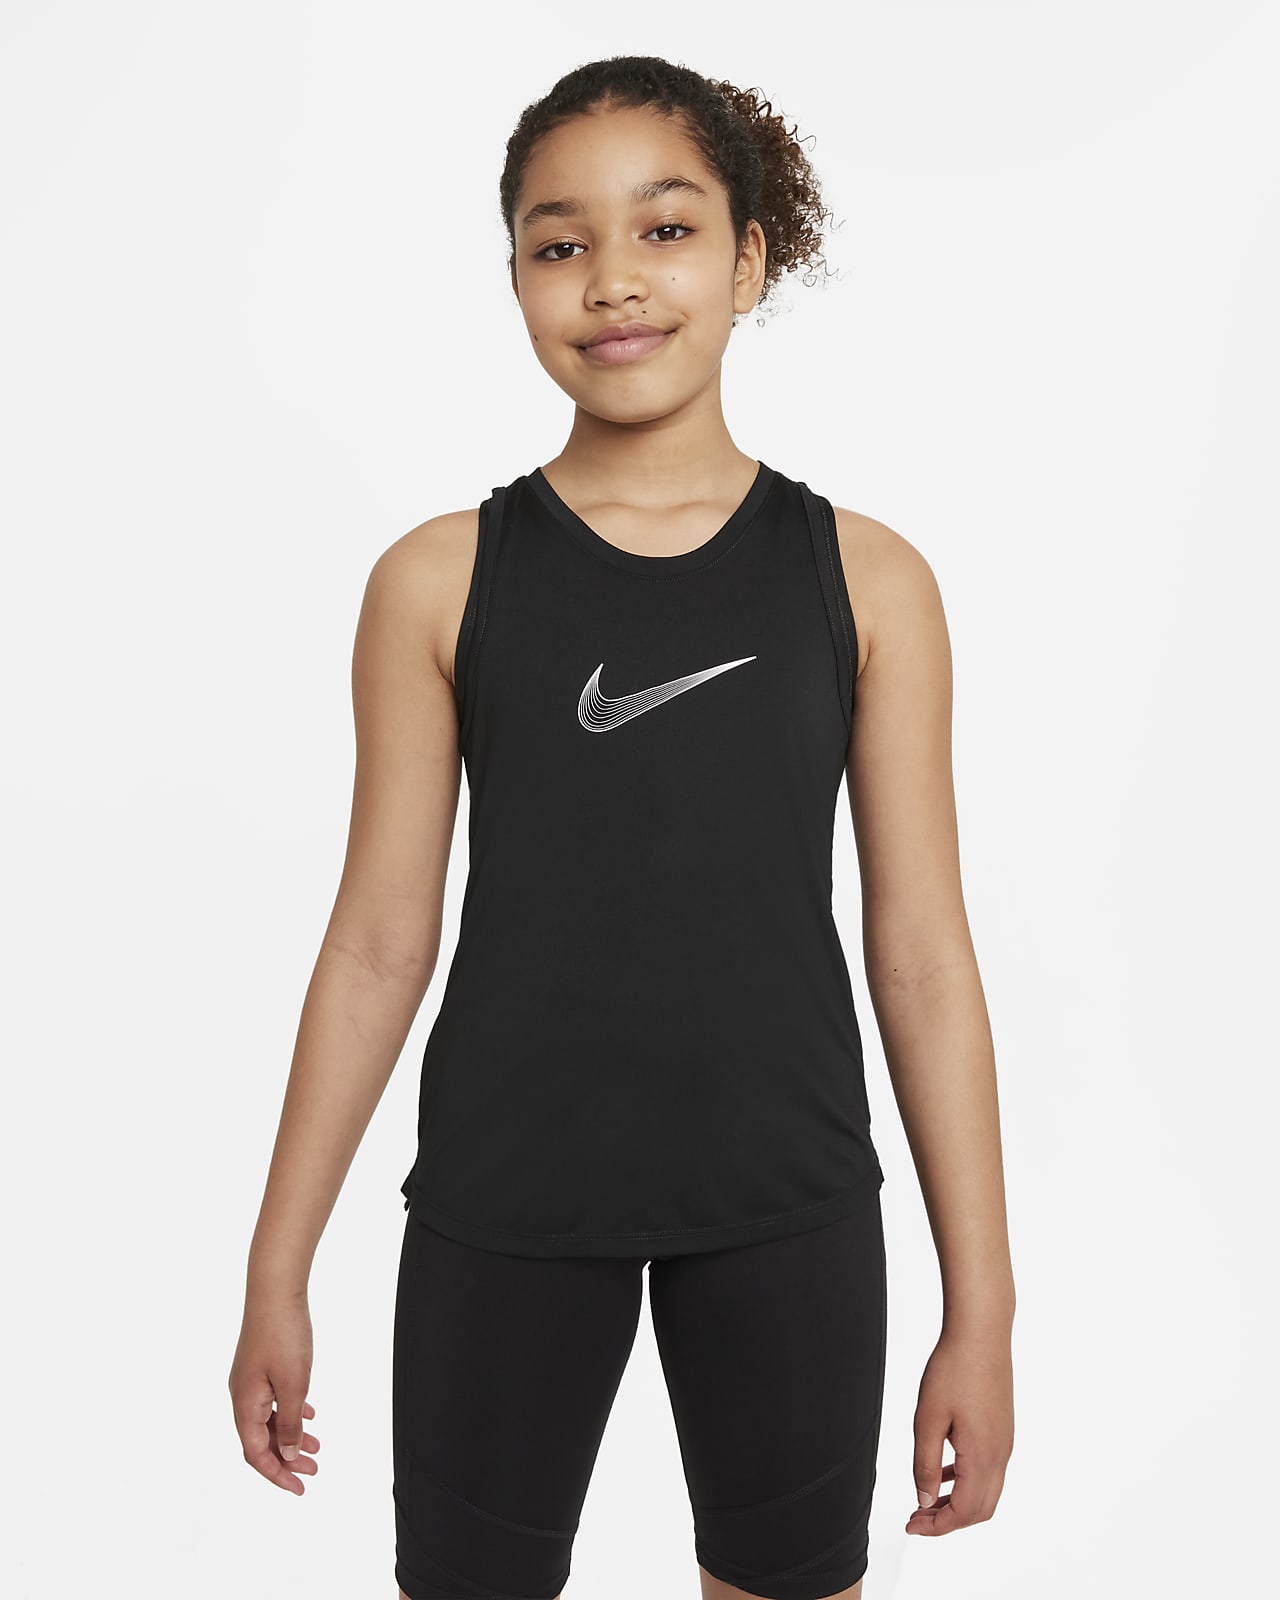 เสื้อกล้ามเทรนนิ่งเด็กโต Dri-FIT Nike One (หญิง)